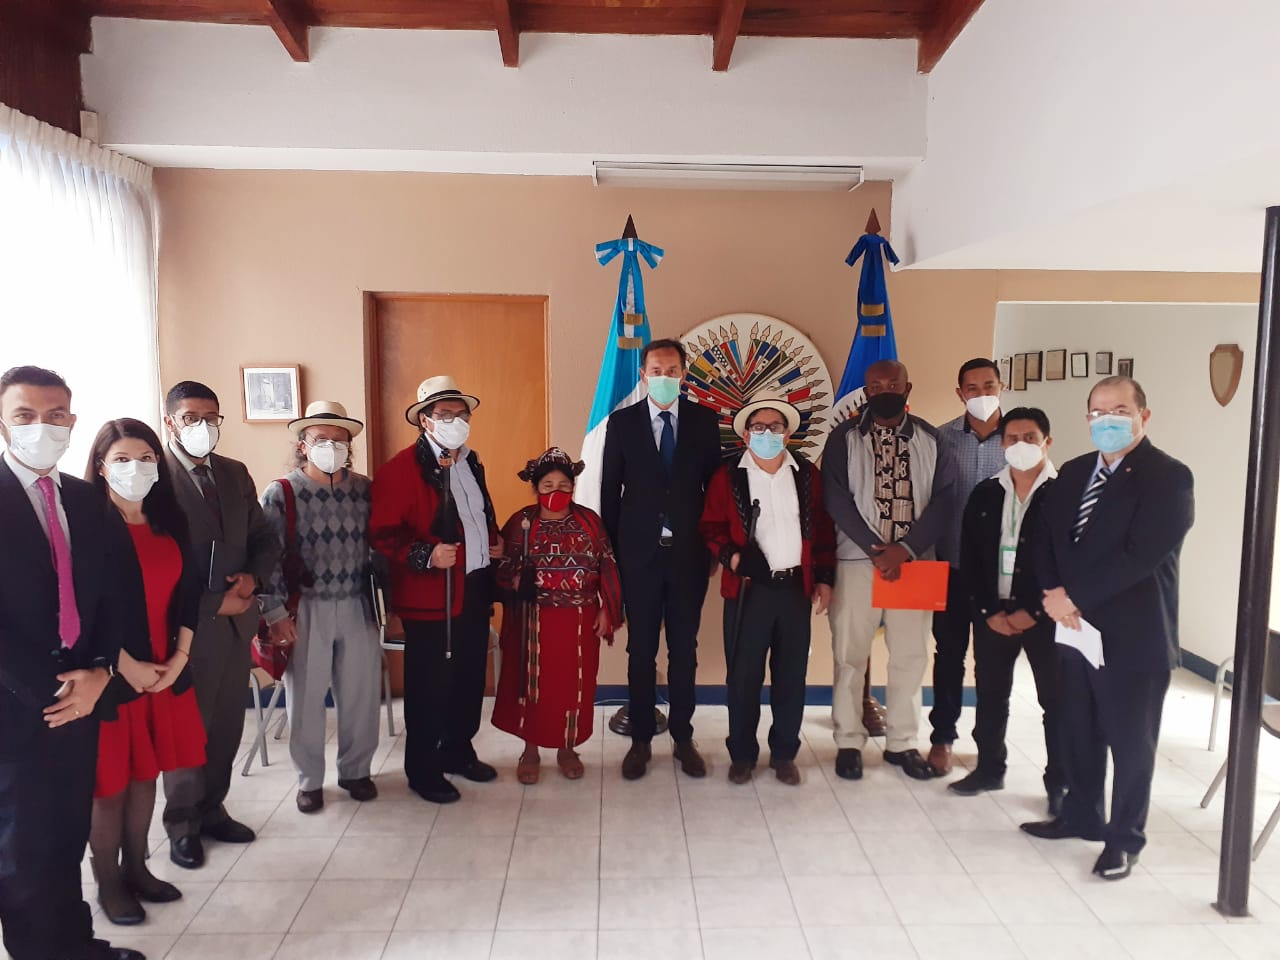 La Misión de la OEA en Guatemala enviada por el S. G. Luis Almagro y presidida por el Emb. Fulvio Pompeo continúa cumpliendo su agenda de reuniones con todos los sectores del país. Se reunió y dialogó con autoridades y representantes de los pueblos Ixil, Xinca y Garífuna.(1 de diciembre de 2020)